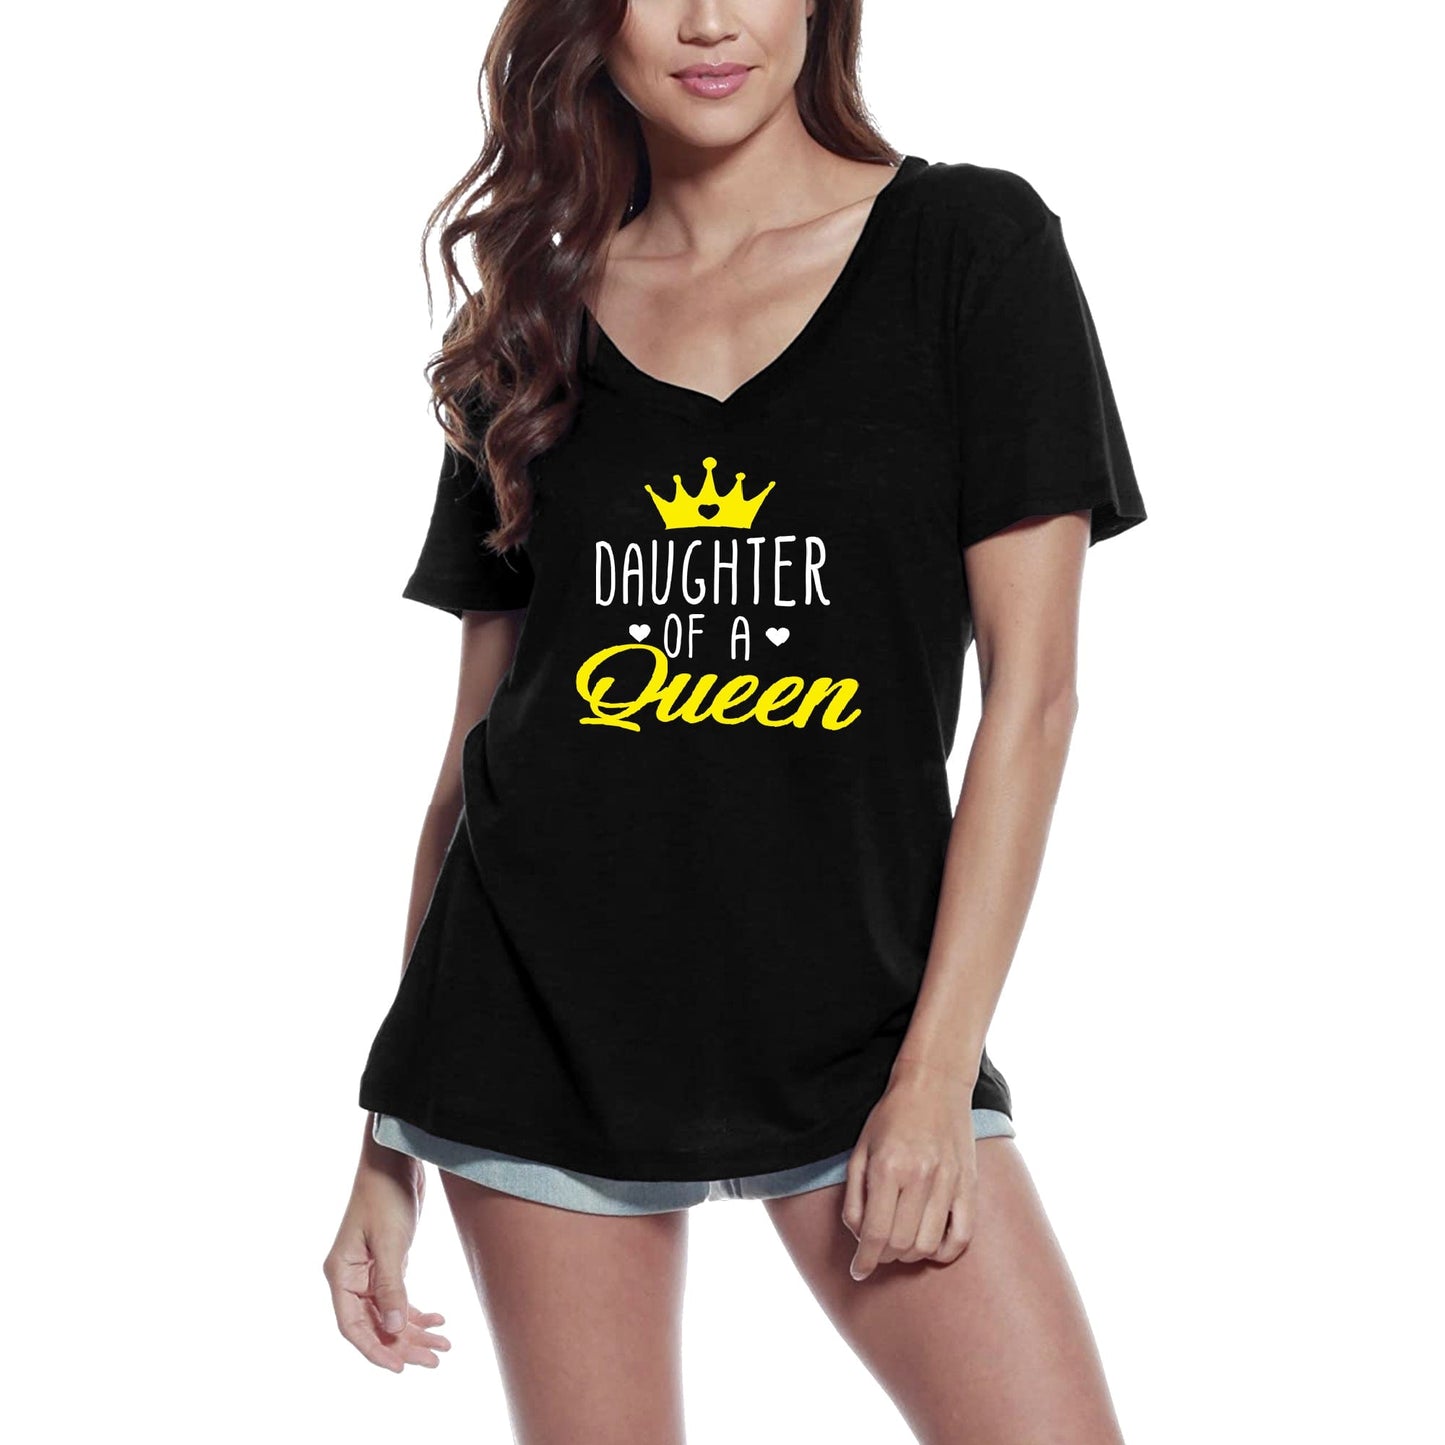 ULTRABASIC Women's T-Shirt Daughter of a Queen - Short Sleeve Tee Shirt Tops